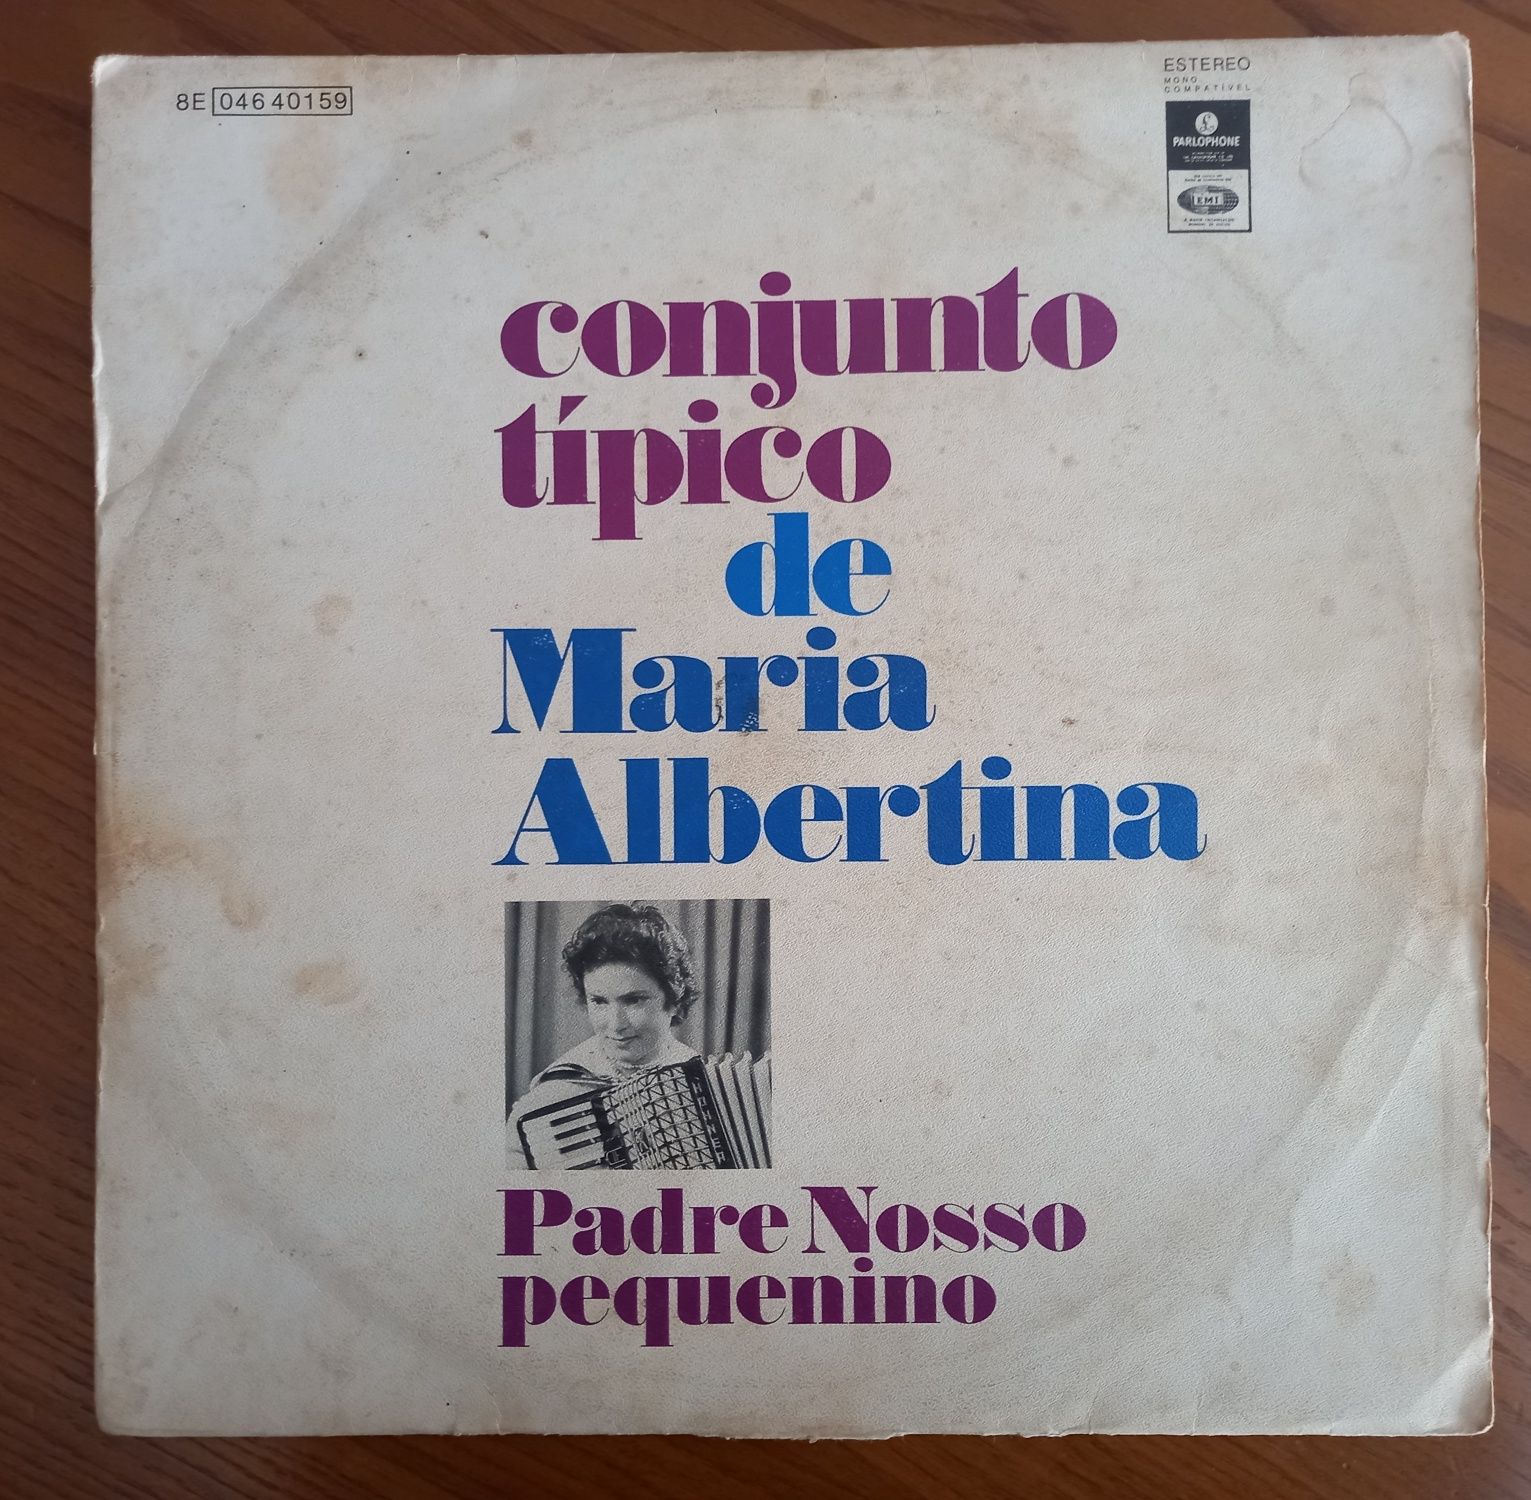 disco vinil LP do Conjunto típico de Maria Albertina